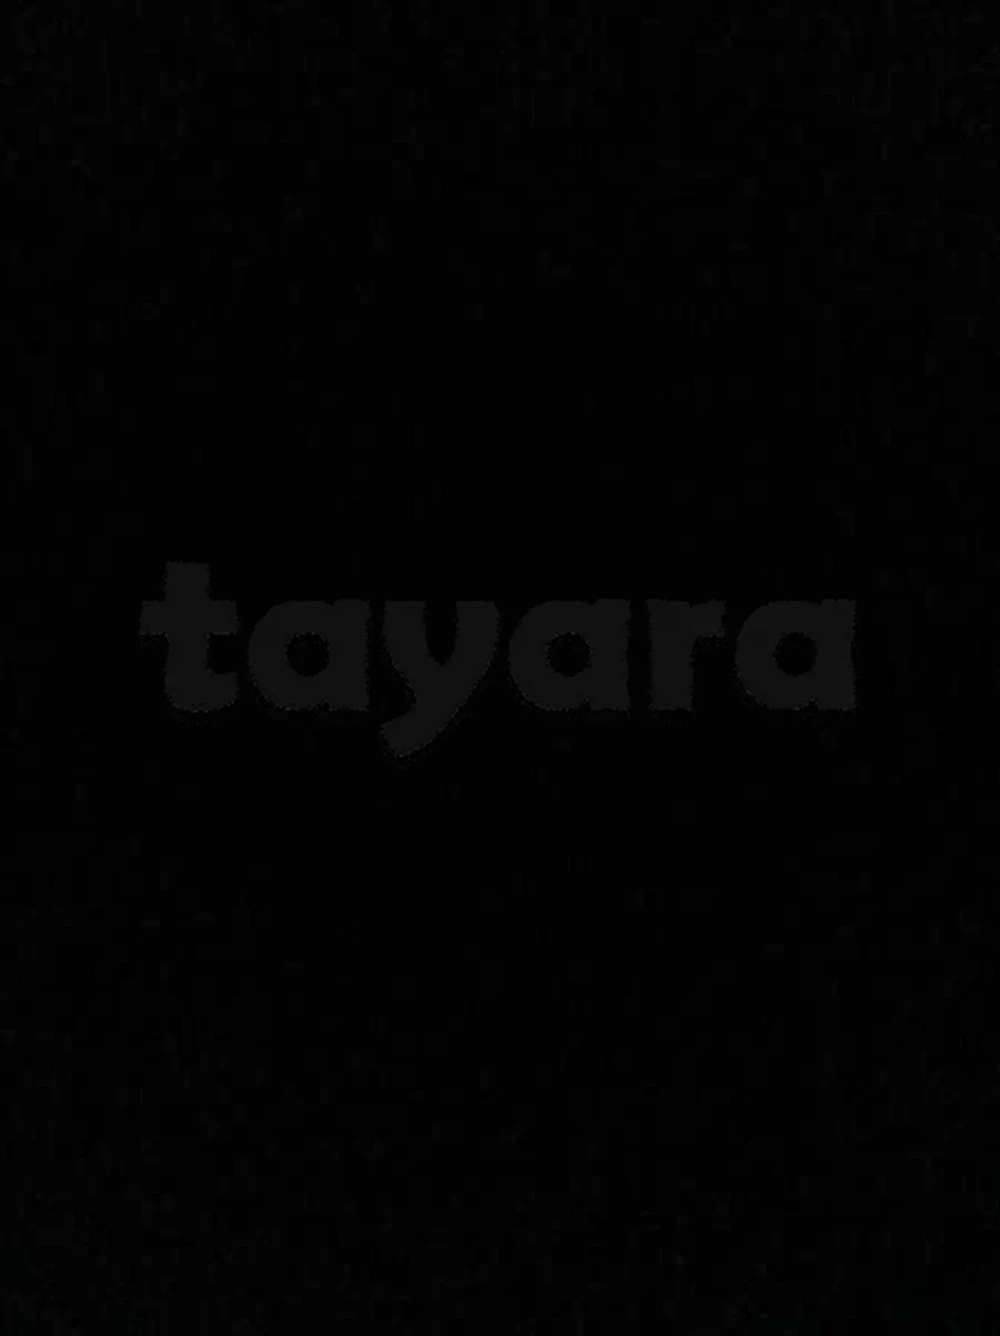 tayara - Selected image backdrop